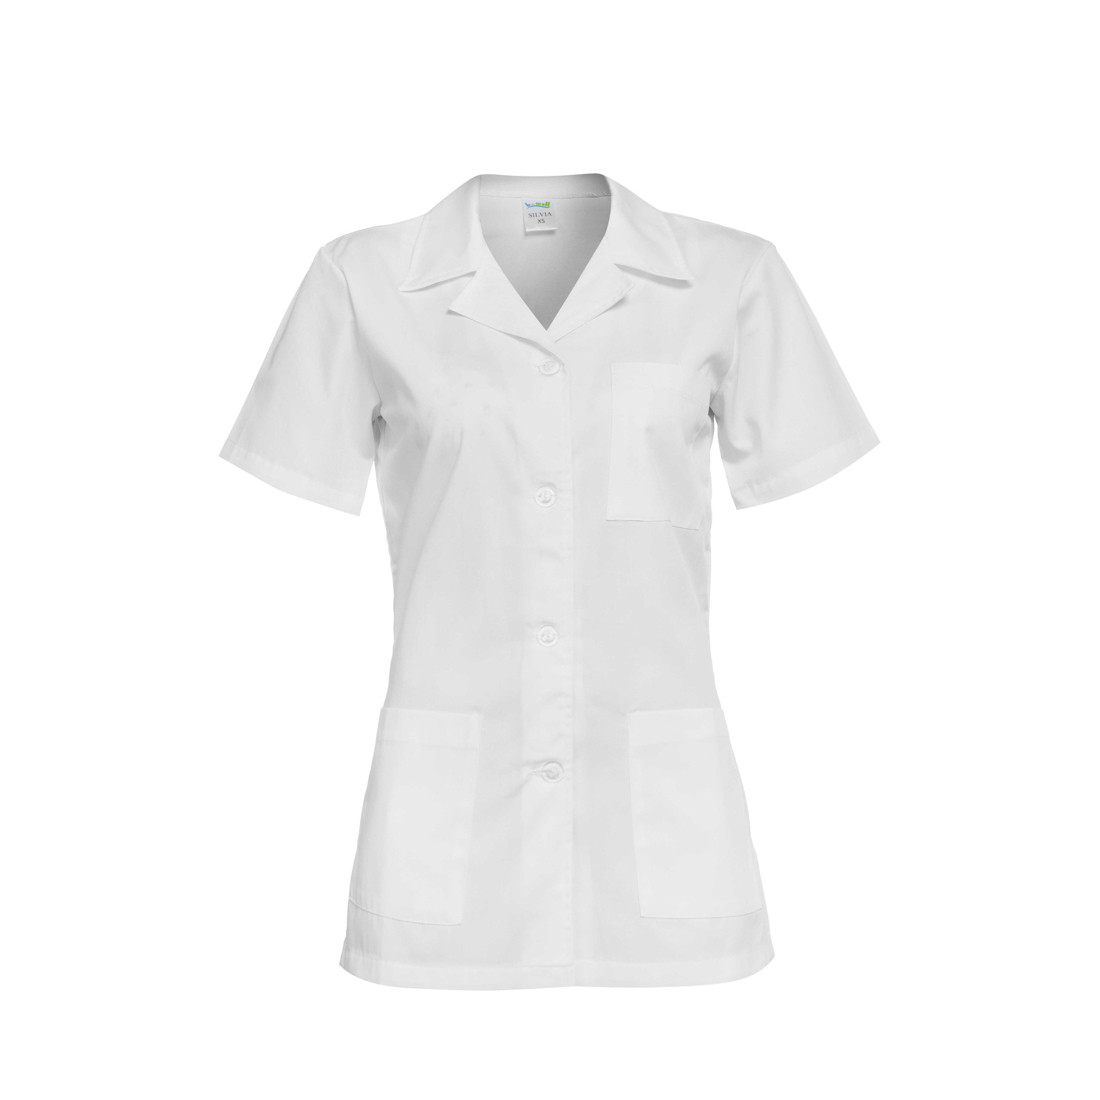 GABI Damen Medizinische Tunika - Arbeitskleidung